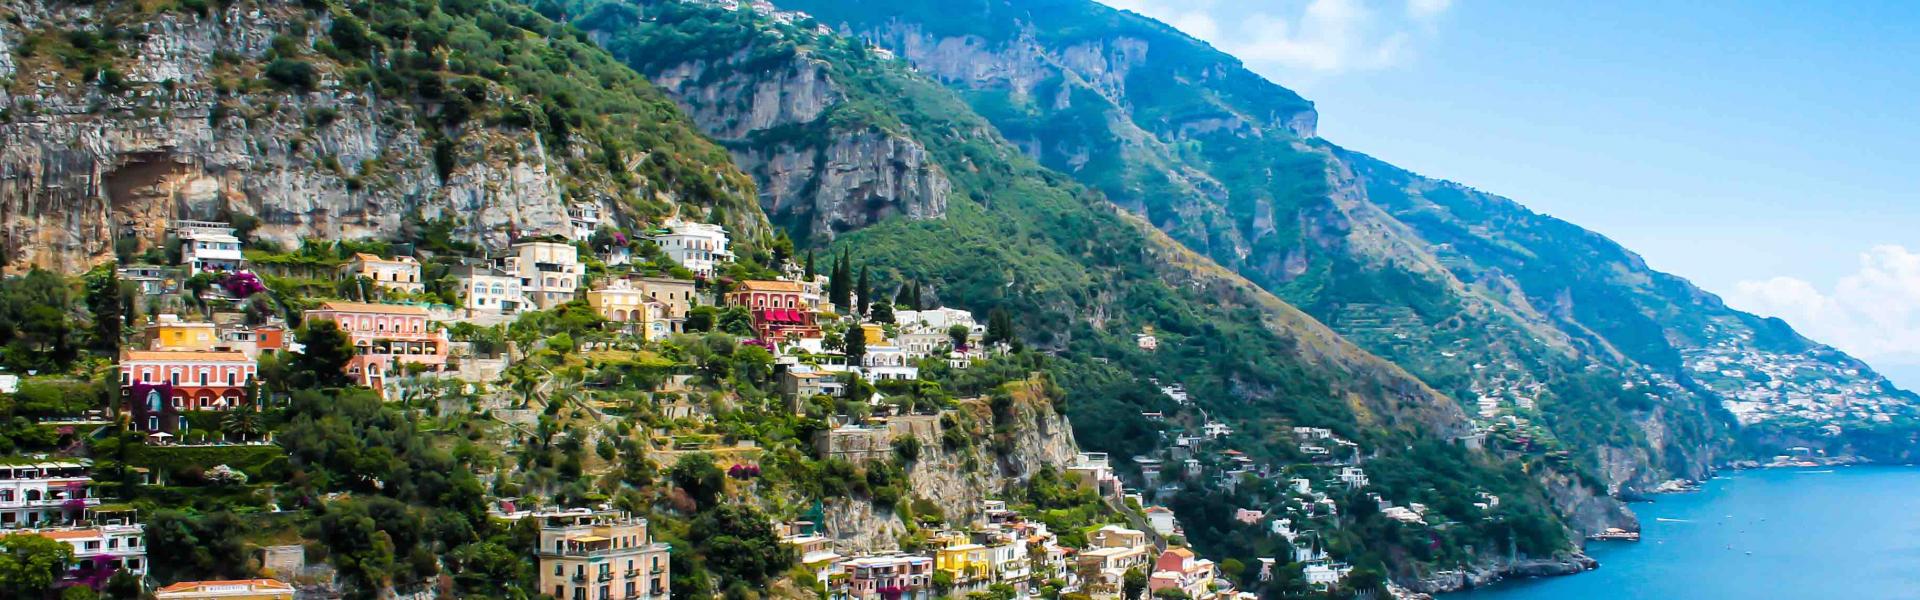 Locations de vacances et saisonnières à Amalfi - HomeToGo